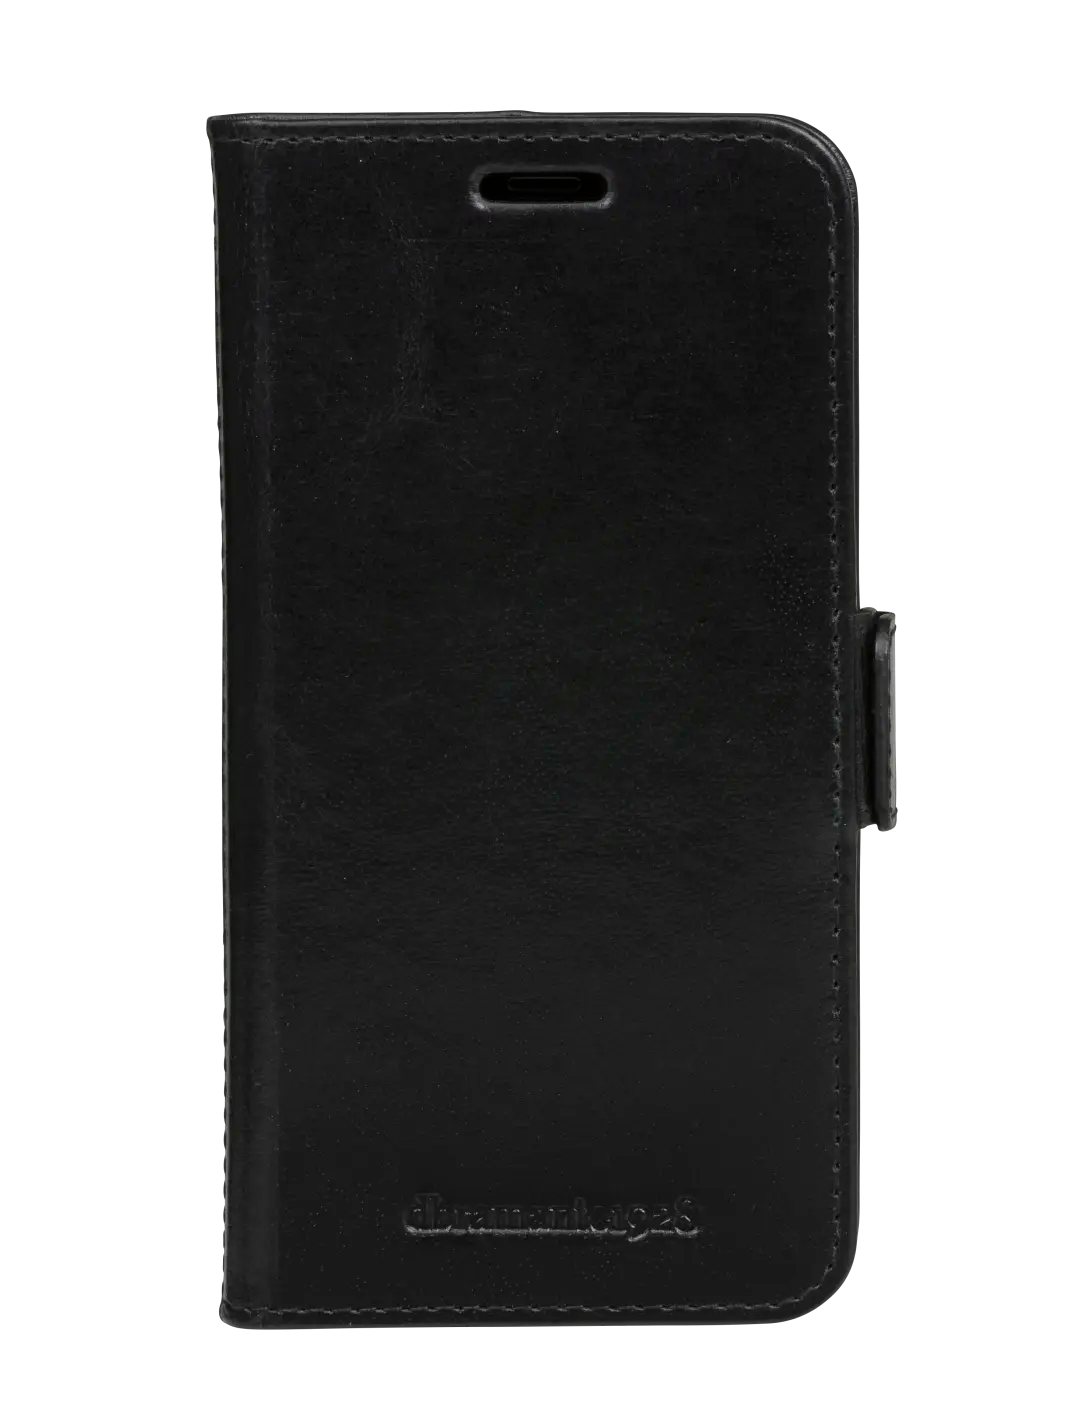 Copenhagen Slim Black iPhone 11 Pro Phone Cases